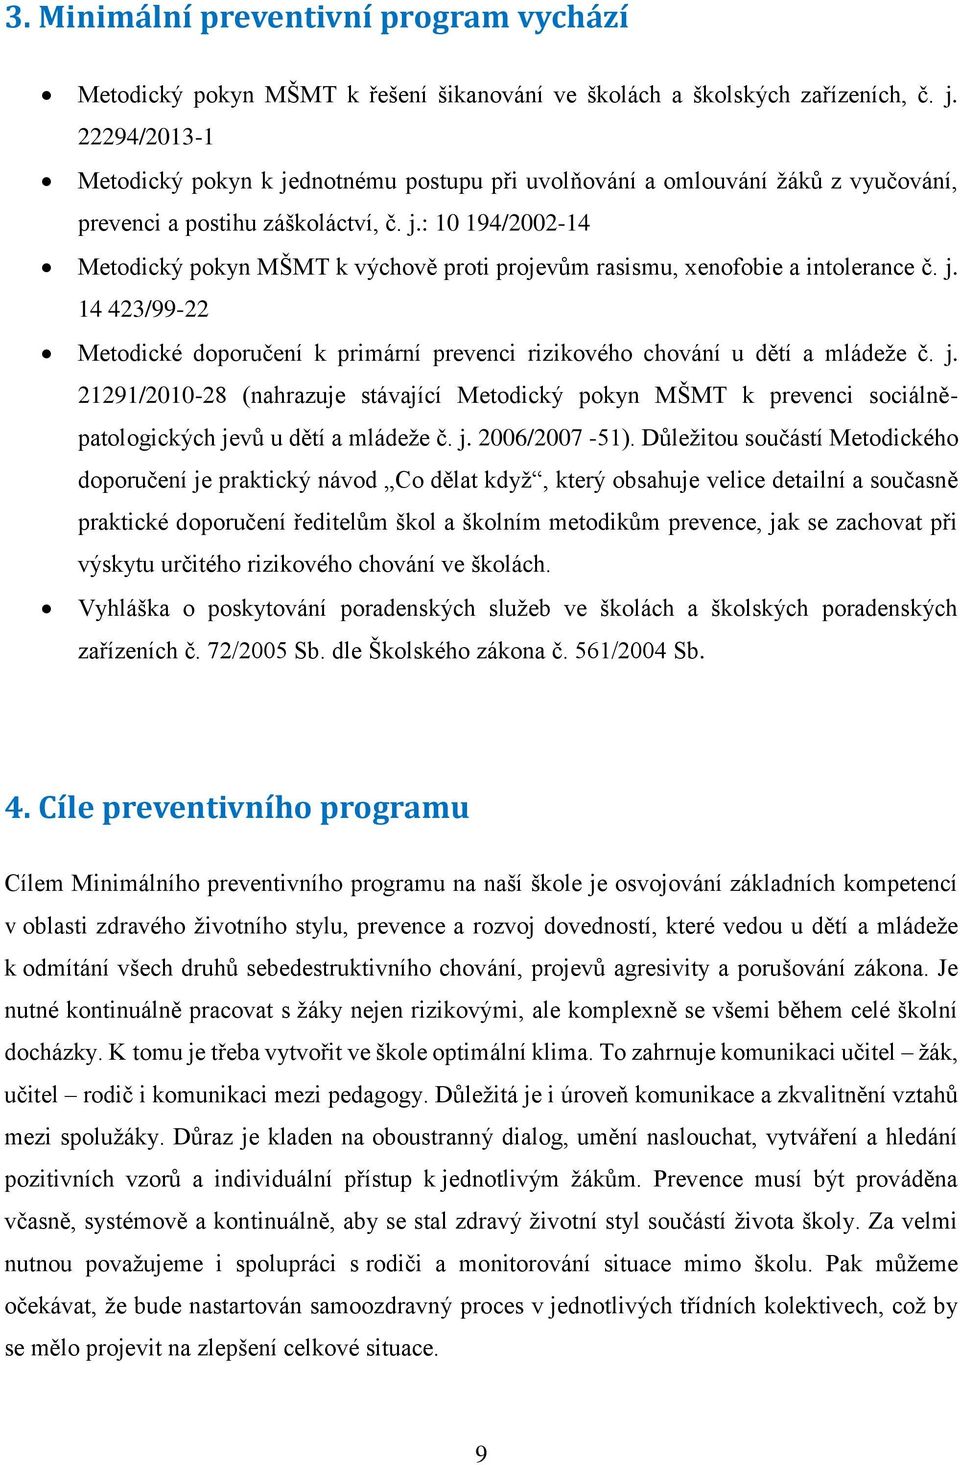 j. 14 423/99-22 Metodické doporučení k primární prevenci rizikového chování u dětí a mládeže č. j.